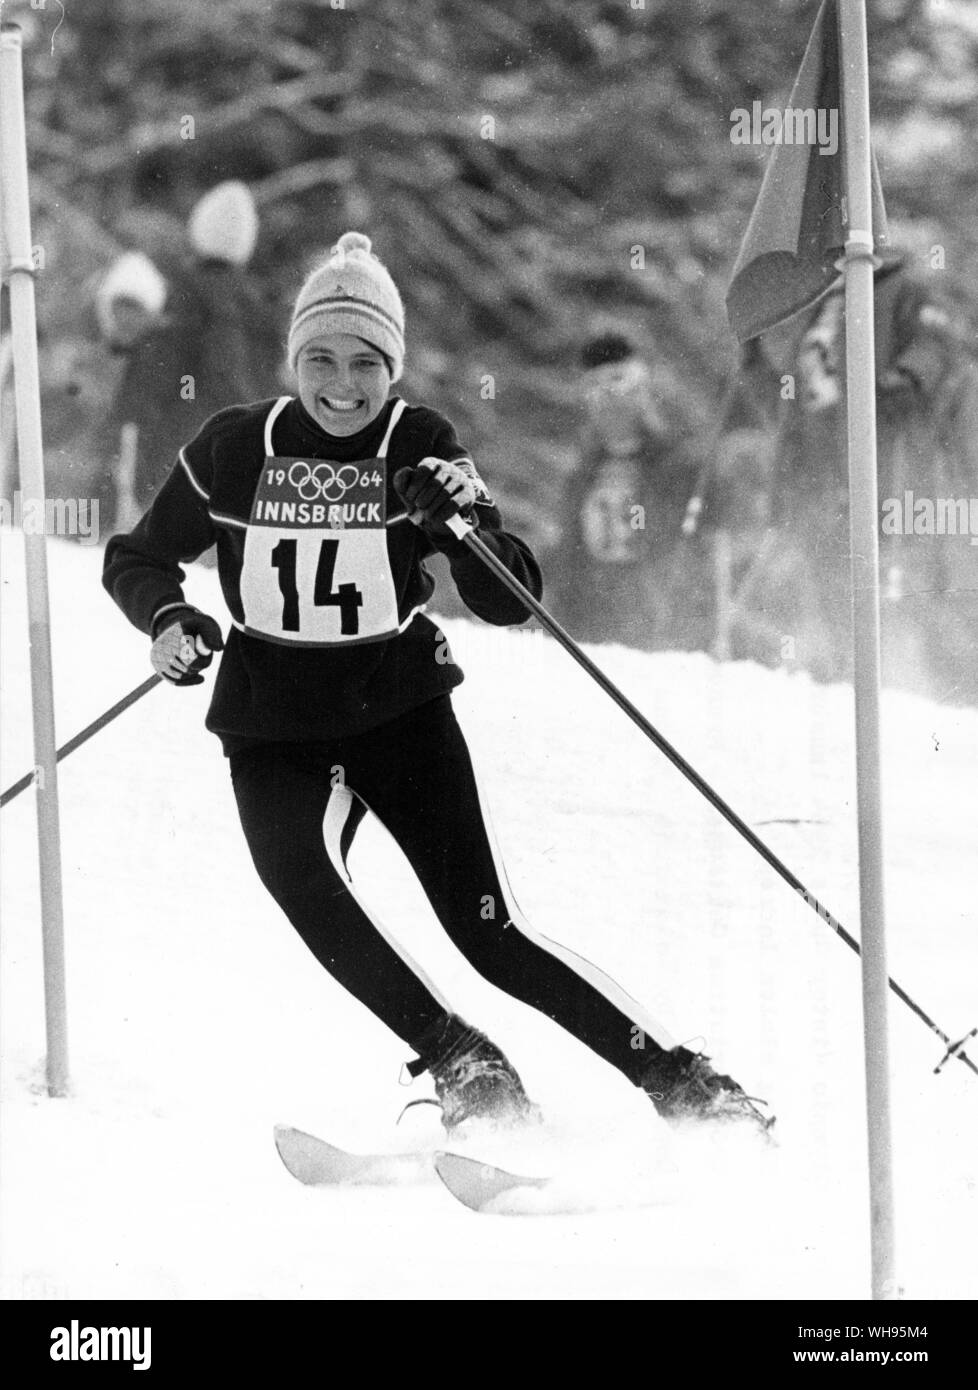 Österreich, Innsbruck, Winter Olympics 1964: Christine Goitschel (Frankreich) Skifahren in slalom der Frauen. Stockfoto